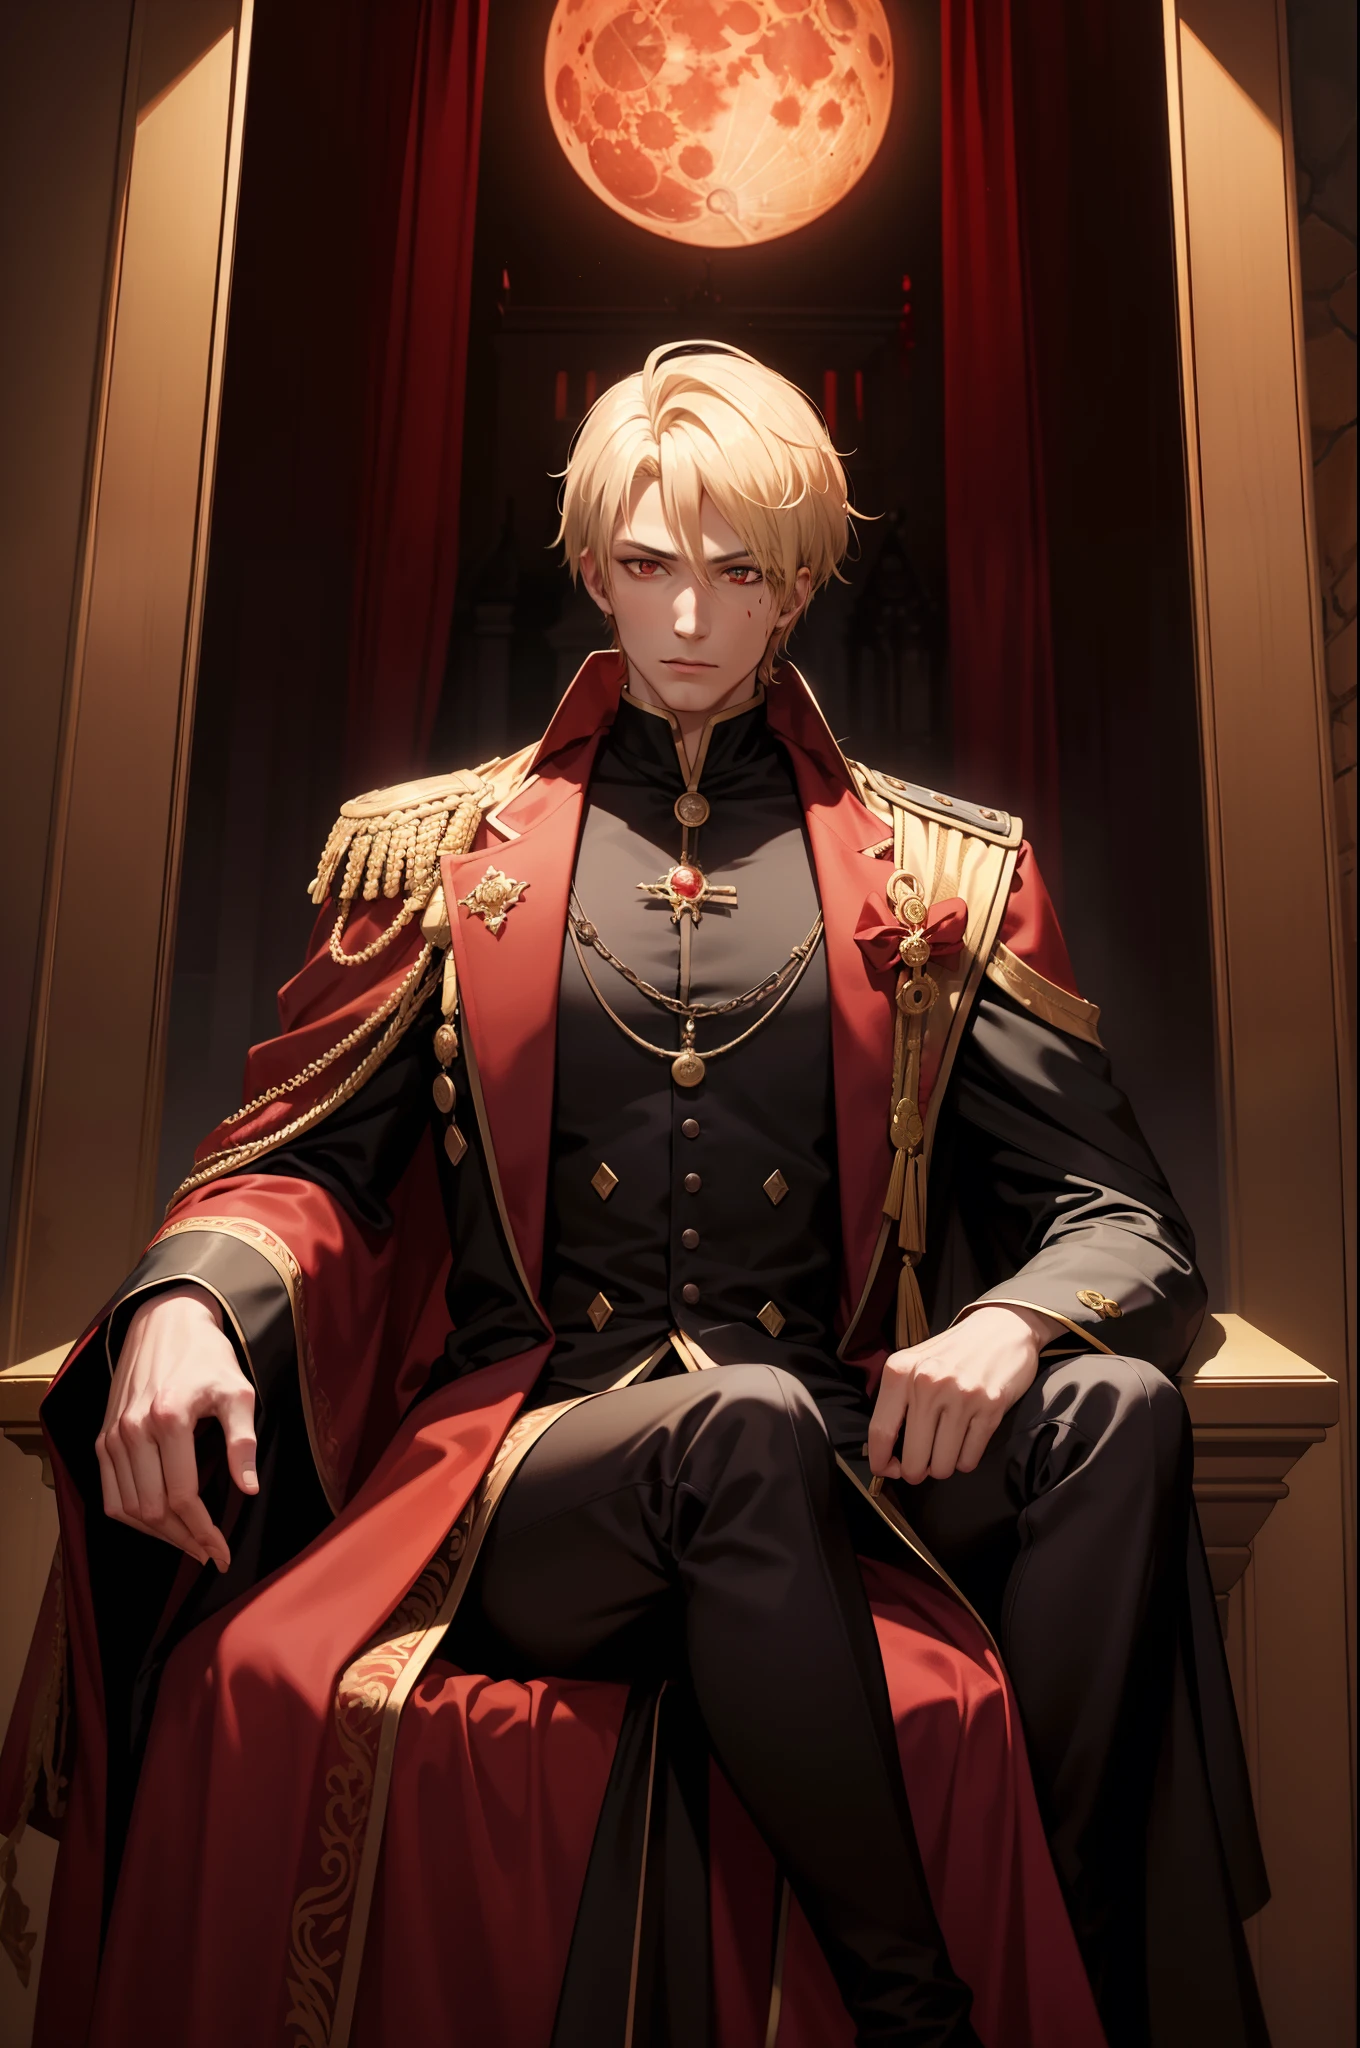 29세 남성, 금발 머리의 뱀파이어 왕 (짧은 머리) 그리고 빨간 눈, 그는 갈색 가운을 입고 빨간색과 검은색 옷을 입는다. (세나리우스 왕성에서의 피묻은 달밤)